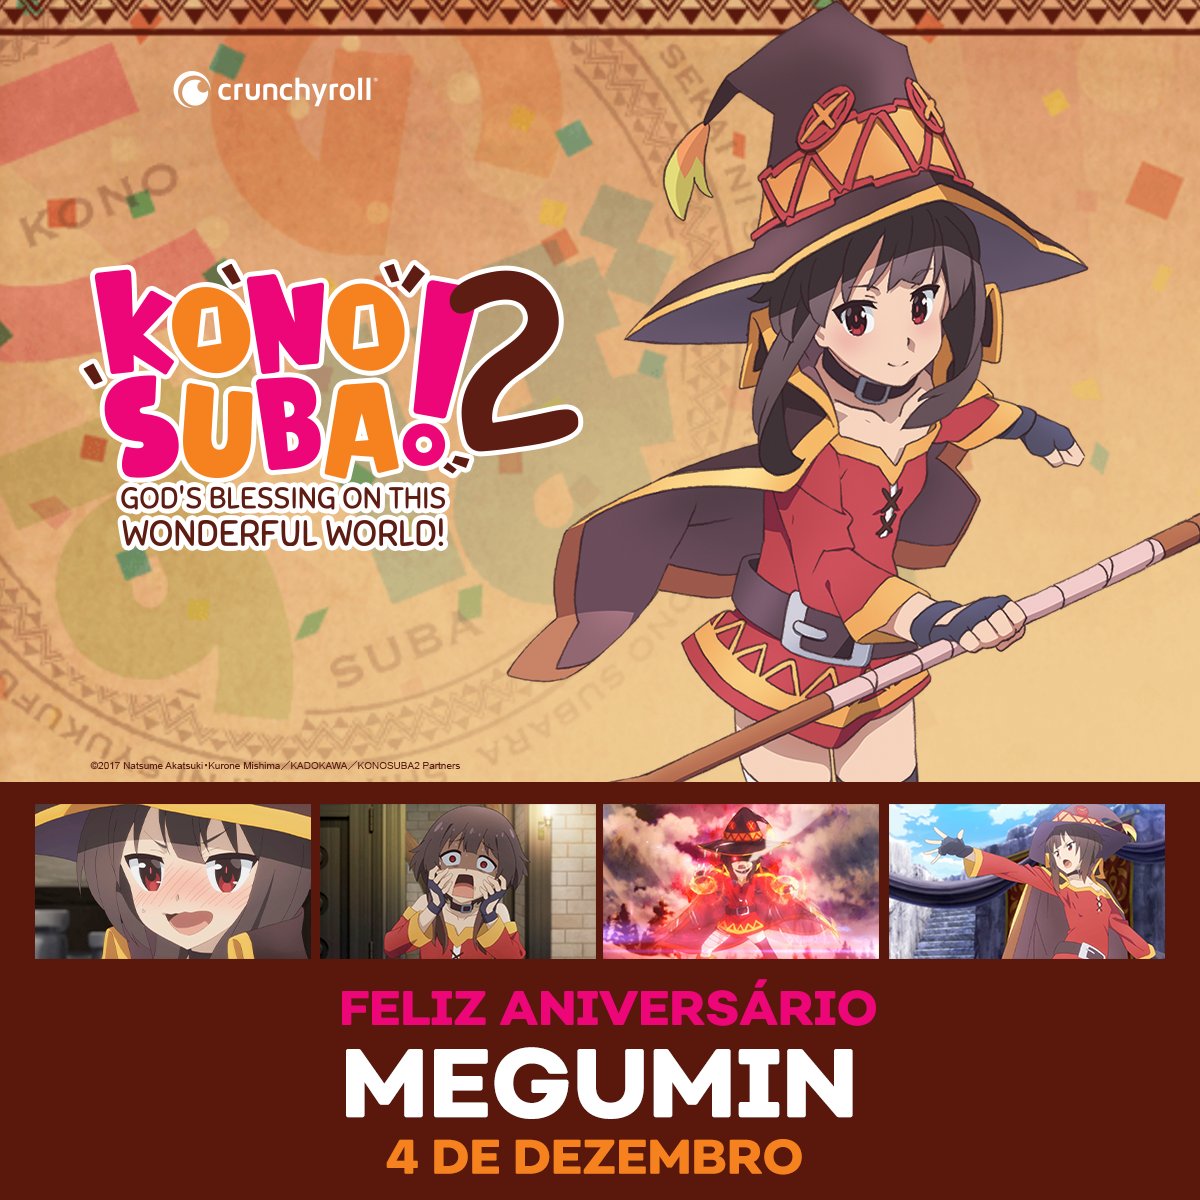 Crunchyroll.pt - (07/06) Feliz aniversário, Kazuma! 🎉🎉🎉 ⠀⠀⠀⠀⠀⠀⠀⠀⠀ ~✨  Anime: Konosuba